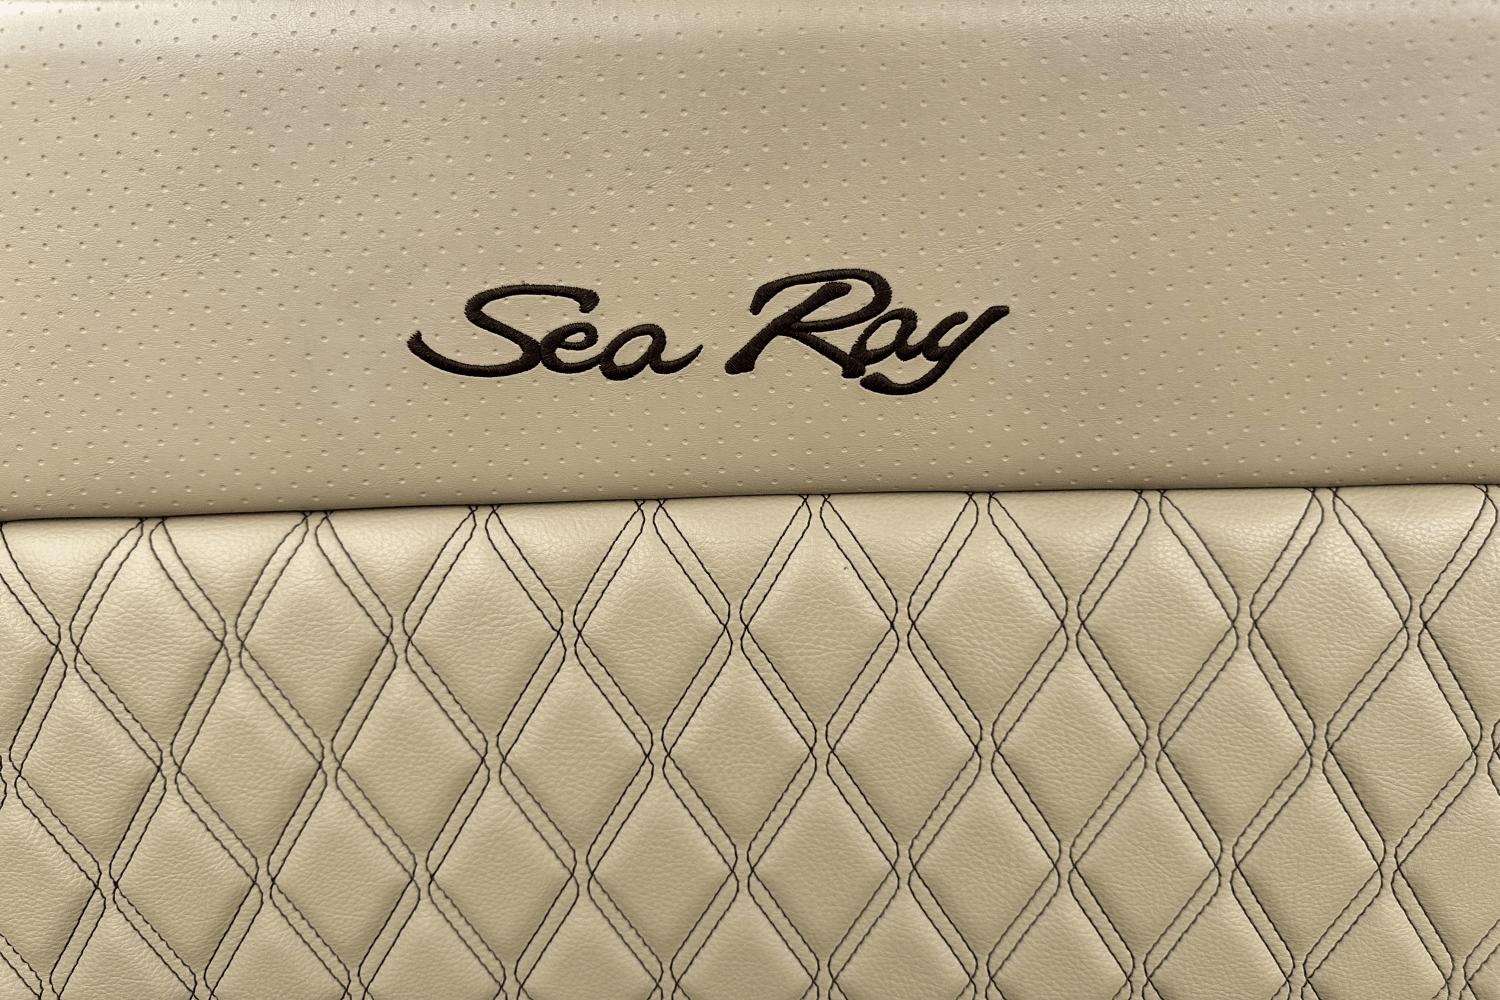 2019 Sea Ray 280 SLX